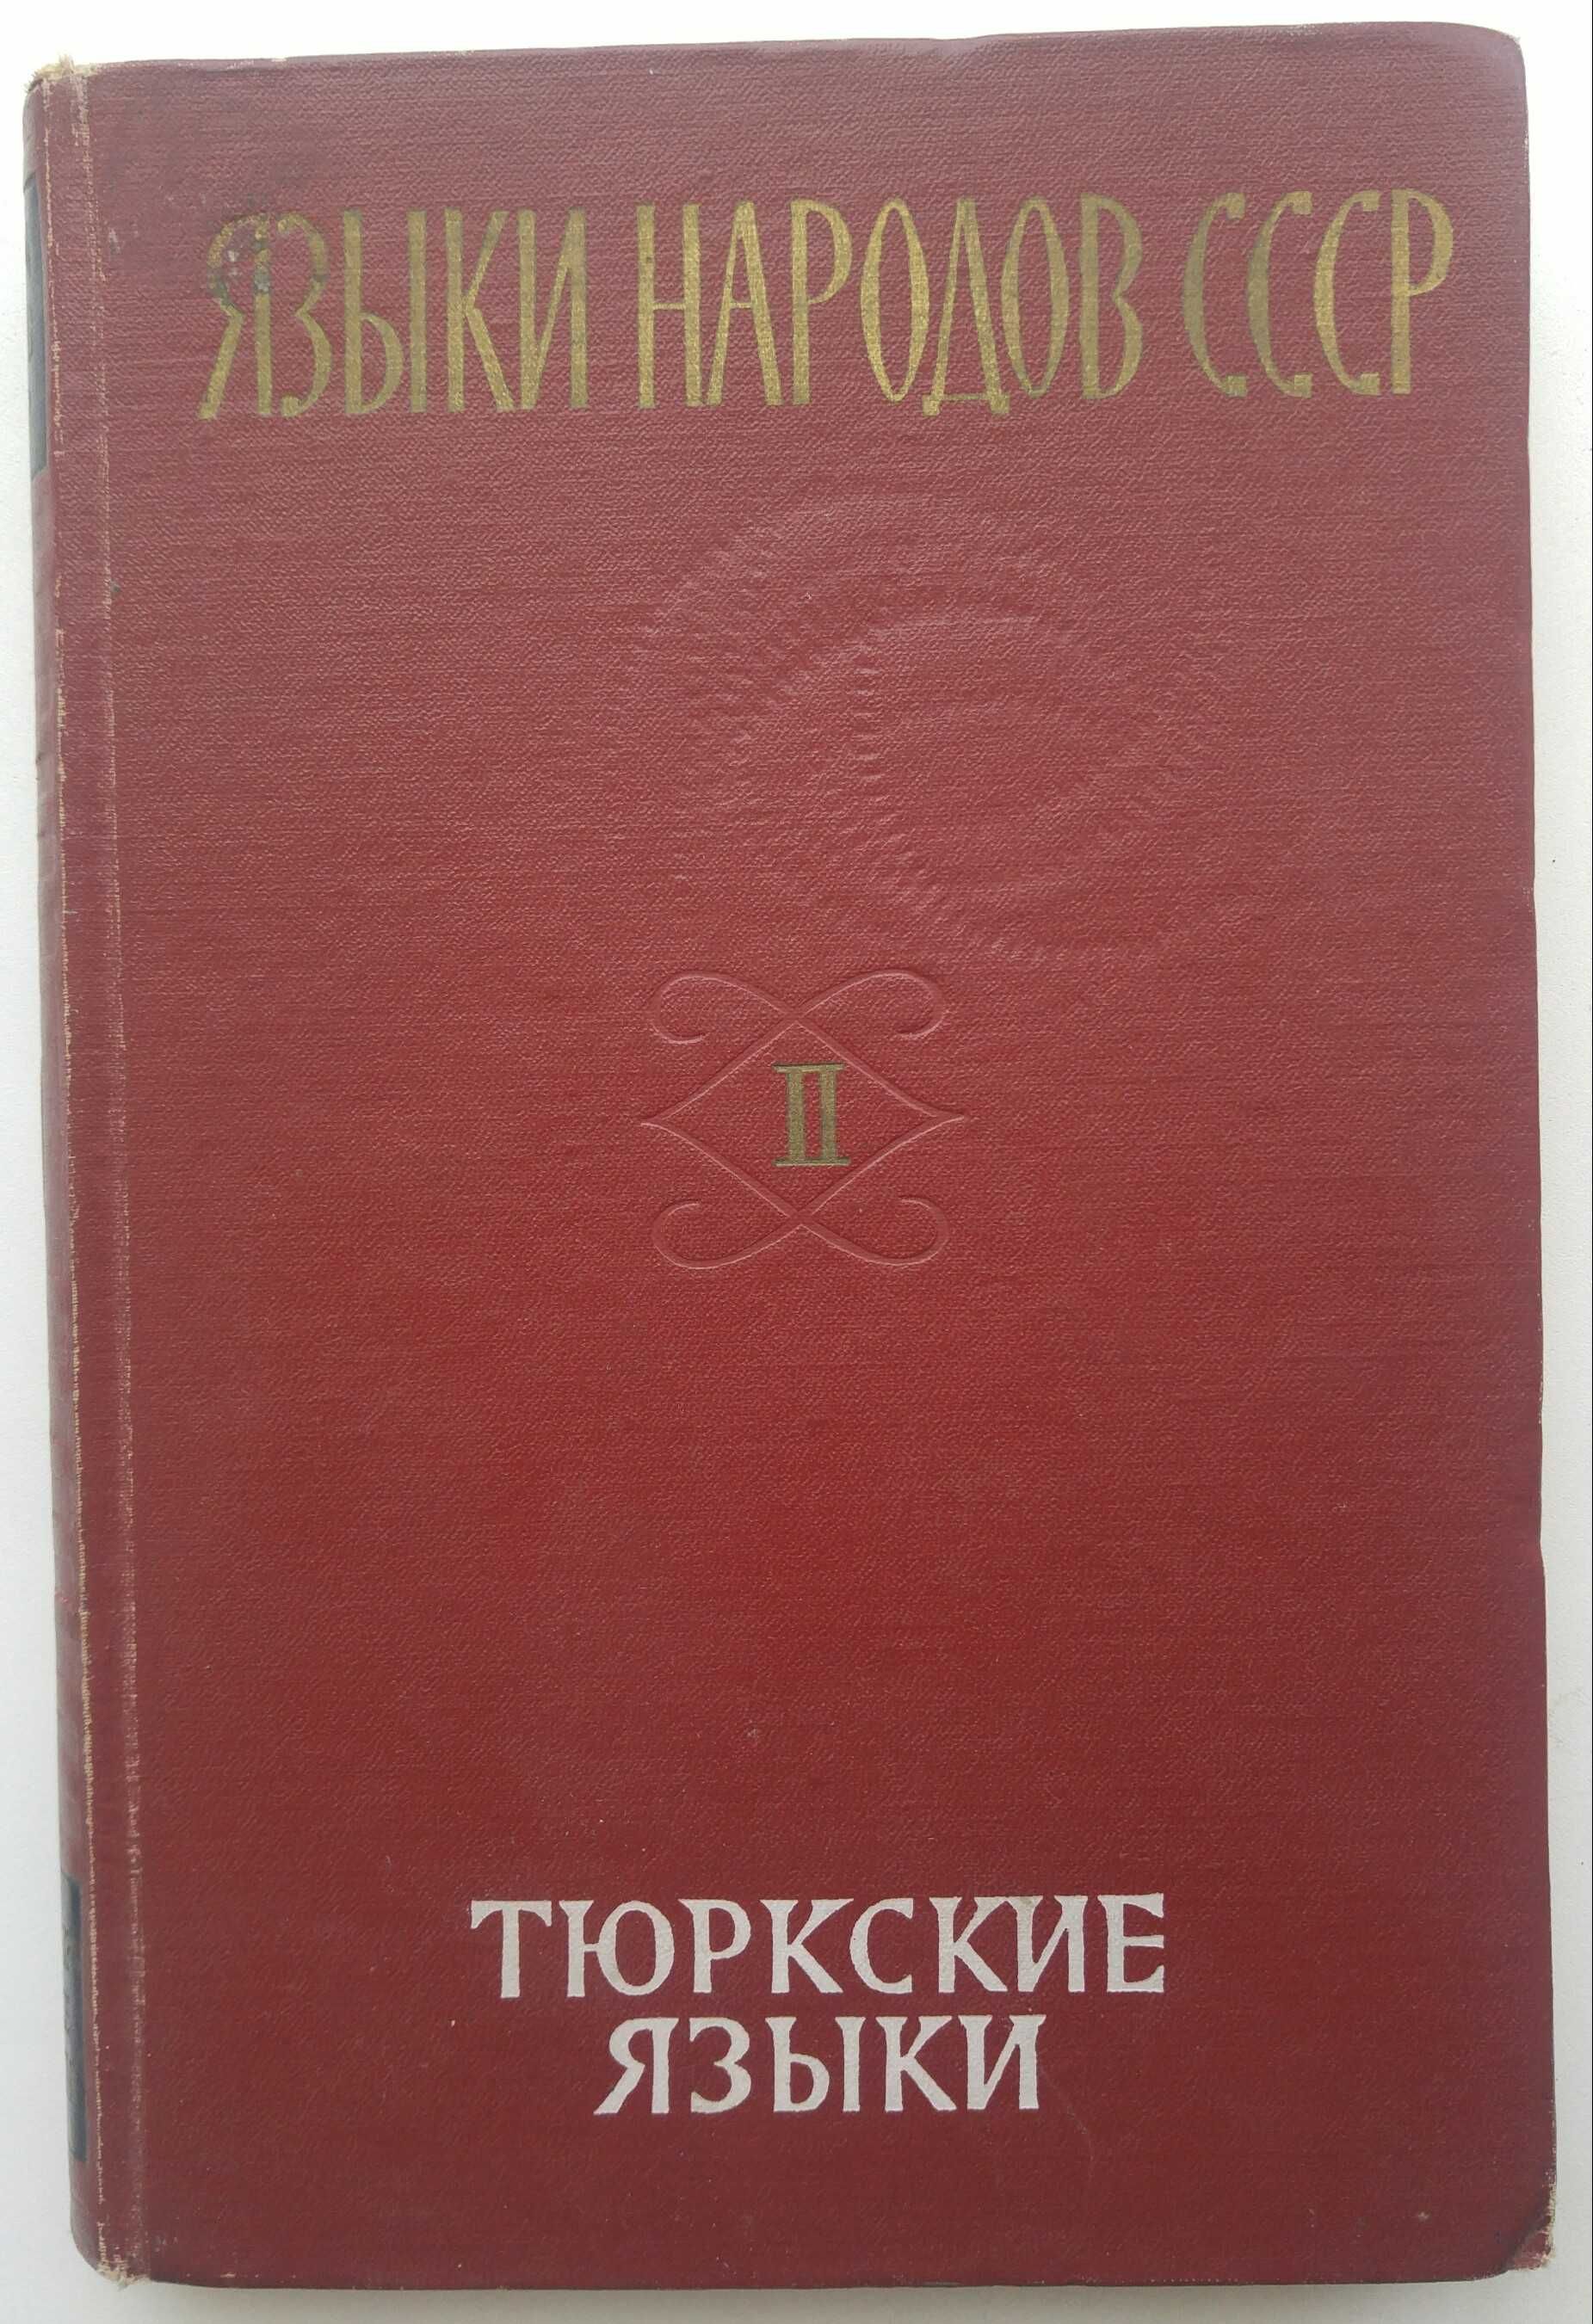 Книга Языки народов СССР. Тюркские языки.